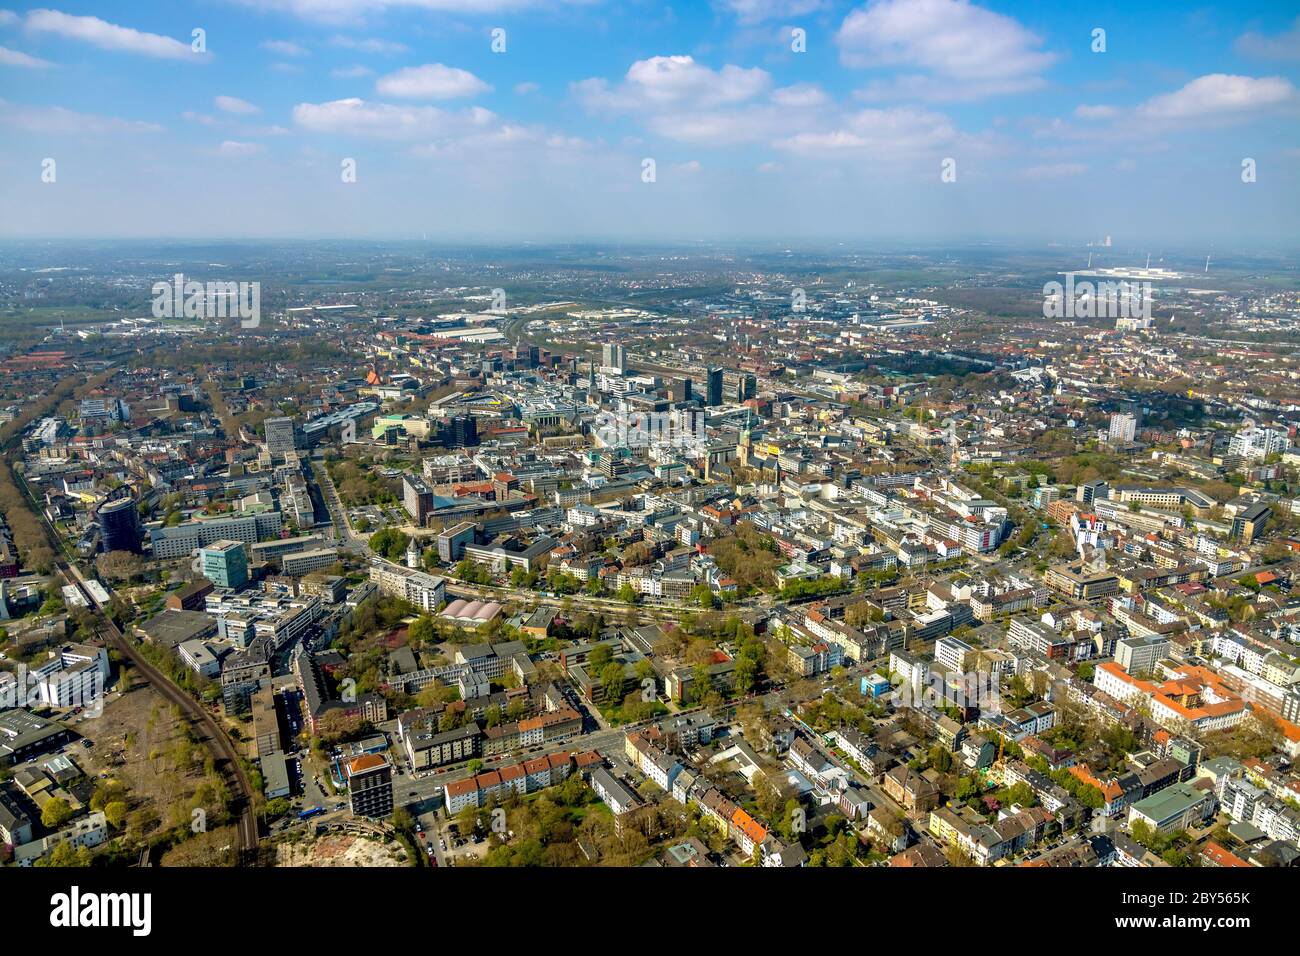 Innenstadt von Dortmund von Osten gesehen, 10.04.2020, Luftaufnahme, Deutschland, Nordrhein-Westfalen, Ruhrgebiet, Dortmund Stockfoto